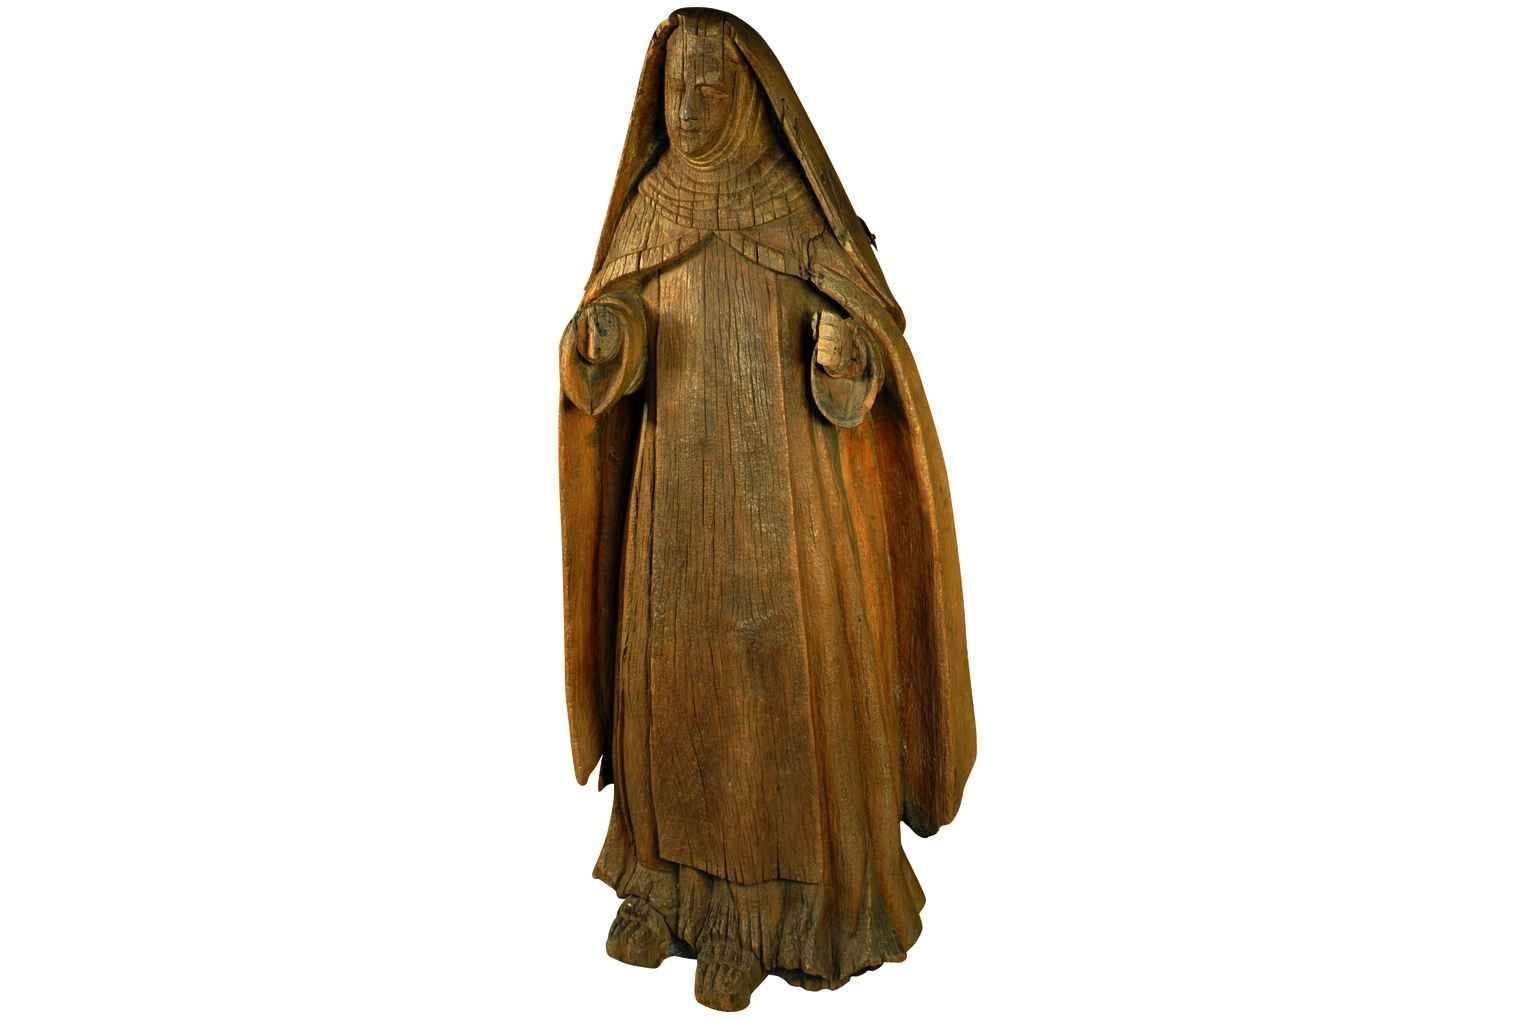 Eine wundervoll primitive italienische Statue der Heiligen Anne - der Mutter der Jungfrau Maria.  Sie ist aus einem massiven Baumstamm geschnitzt.  Nachdem sie jahrhundertelang den Witterungseinflüssen ausgesetzt war, ist Saint Anne hier wunderschön